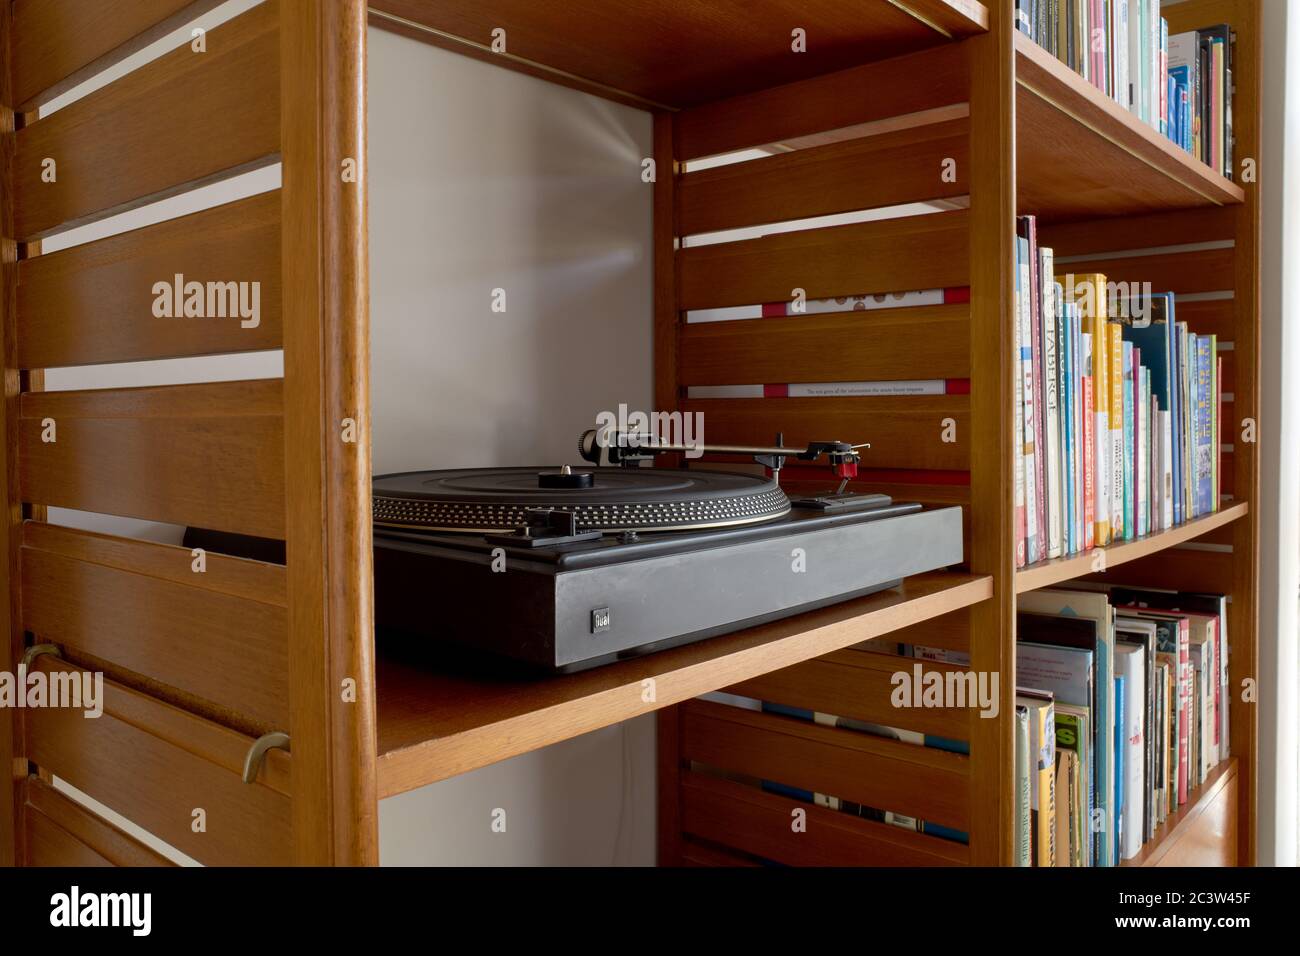 Foto von Möbeln aus der Mitte des 20. Jahrhunderts in einem Wohnzimmer. Mit  Bücherregalen und Schallplatten. Zeigt einen Dual 505 Plattenspieler und  ein Bose System Stockfotografie - Alamy